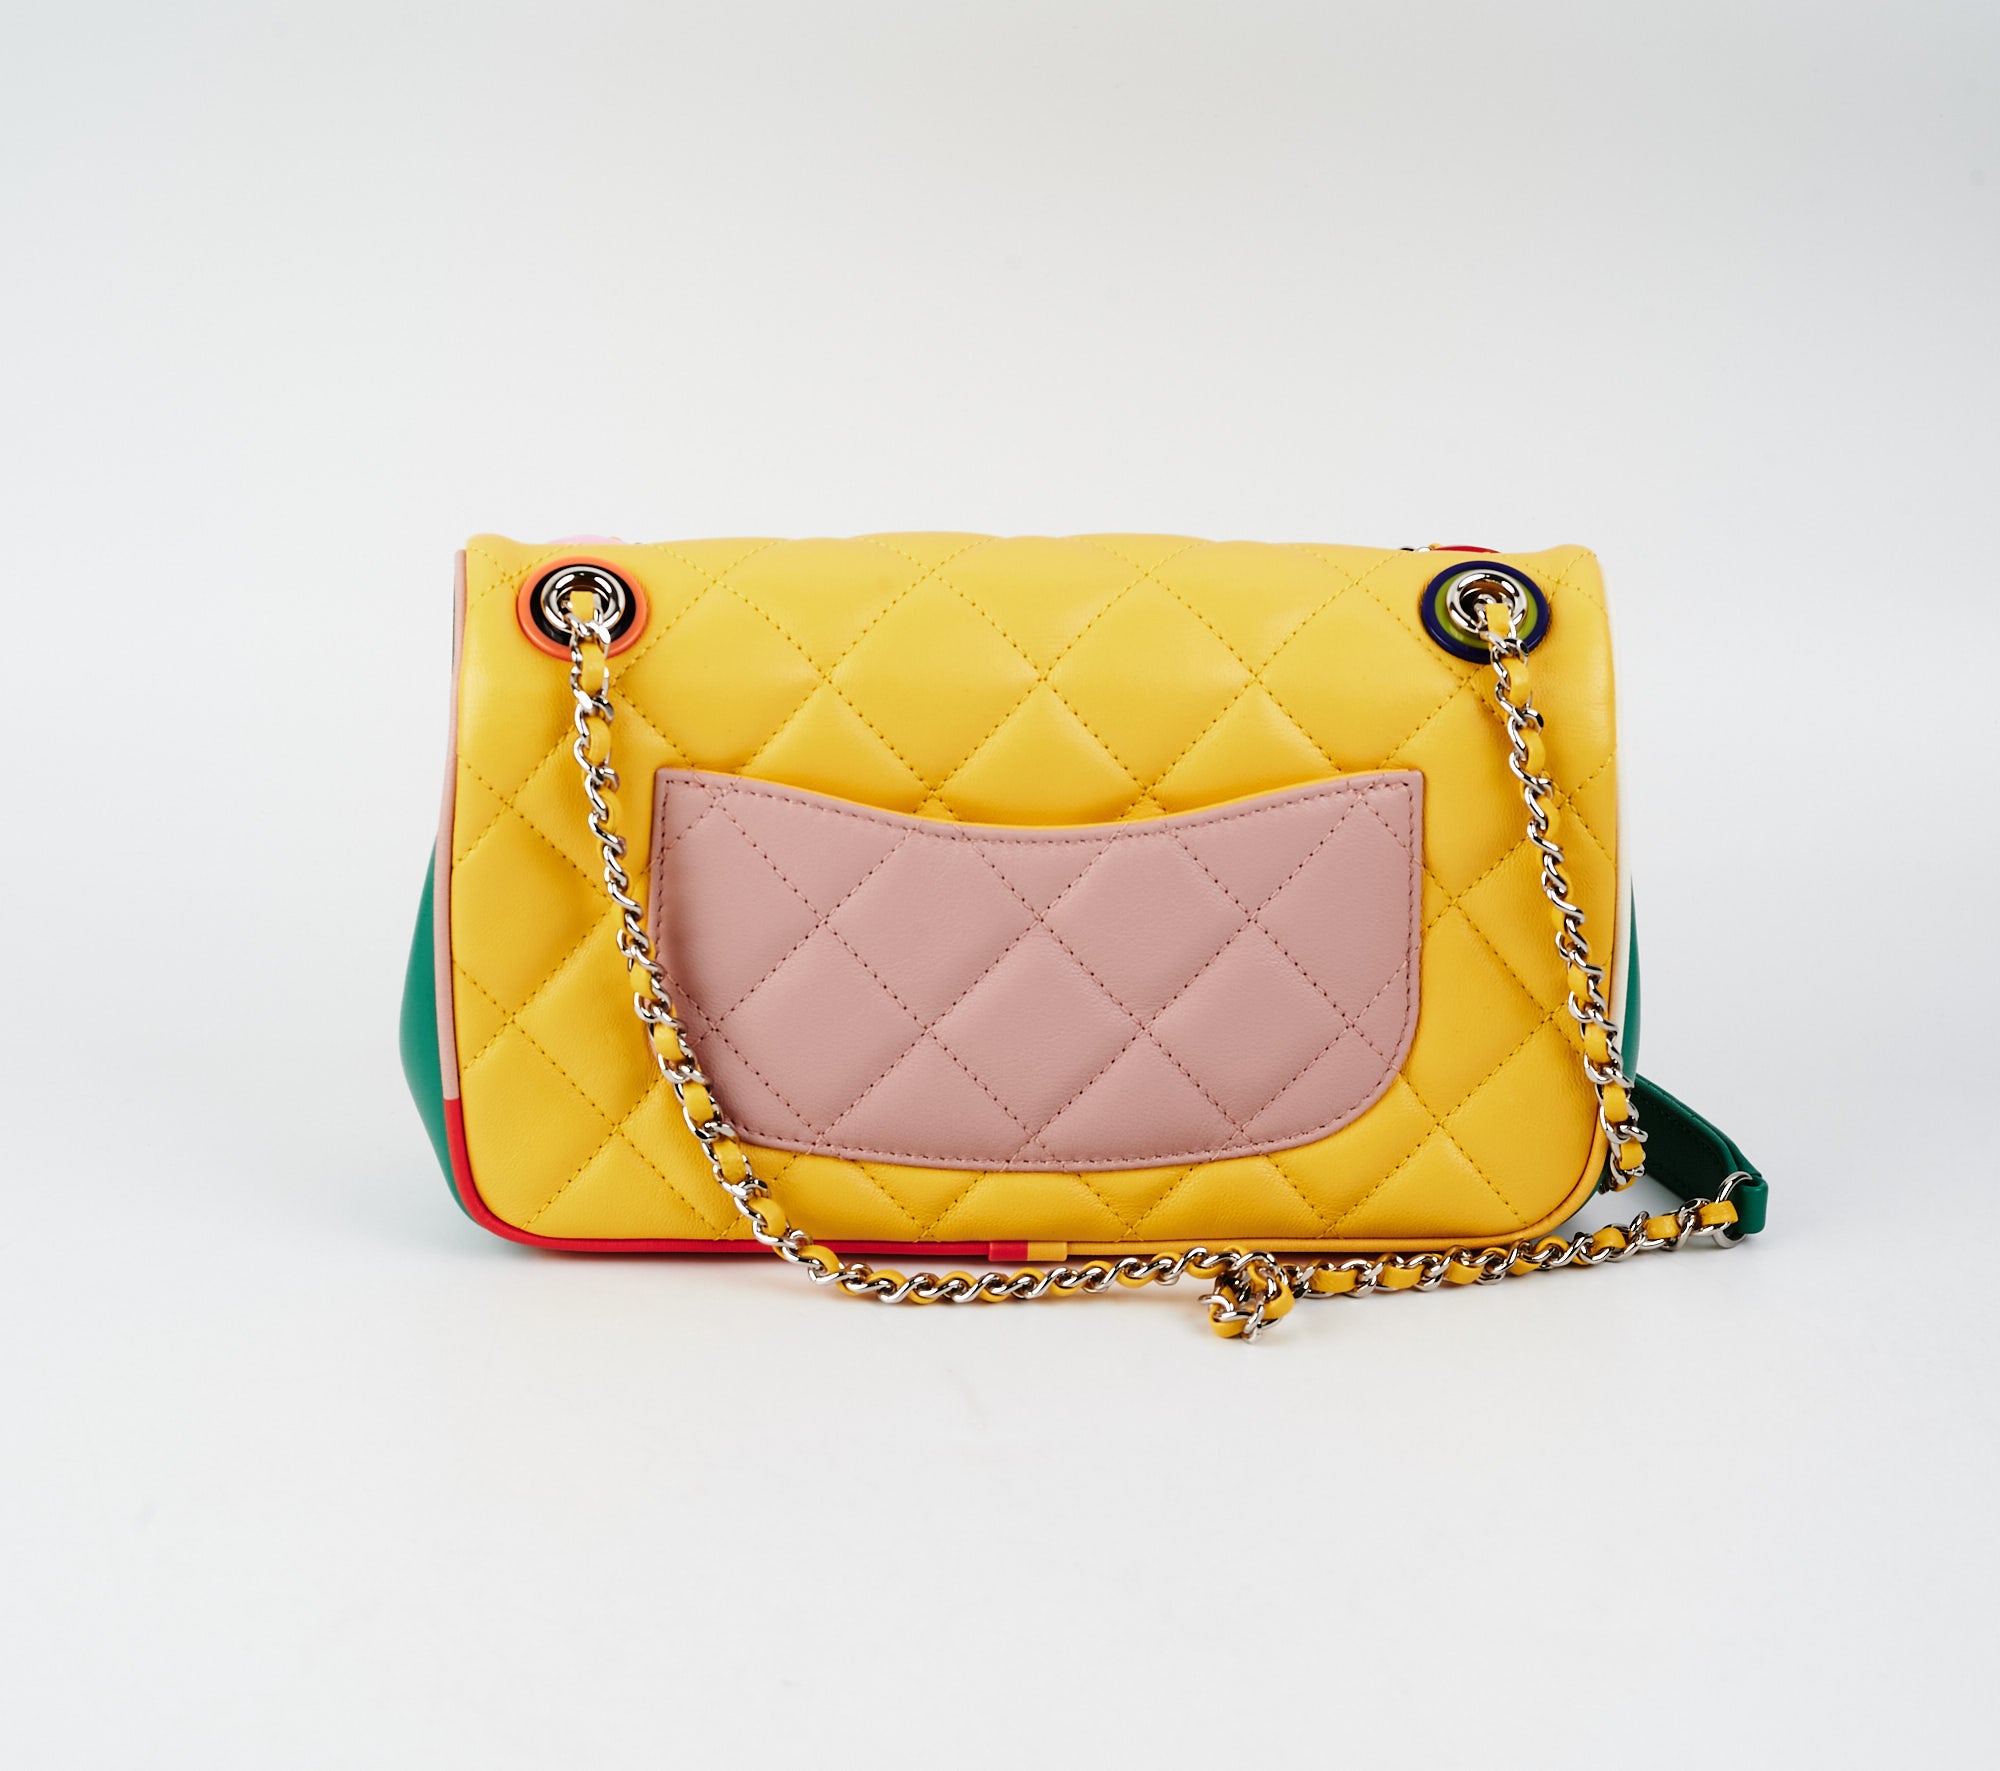 Chanel Yellow Tweed S19 Bag  AWL2183  LuxuryPromise